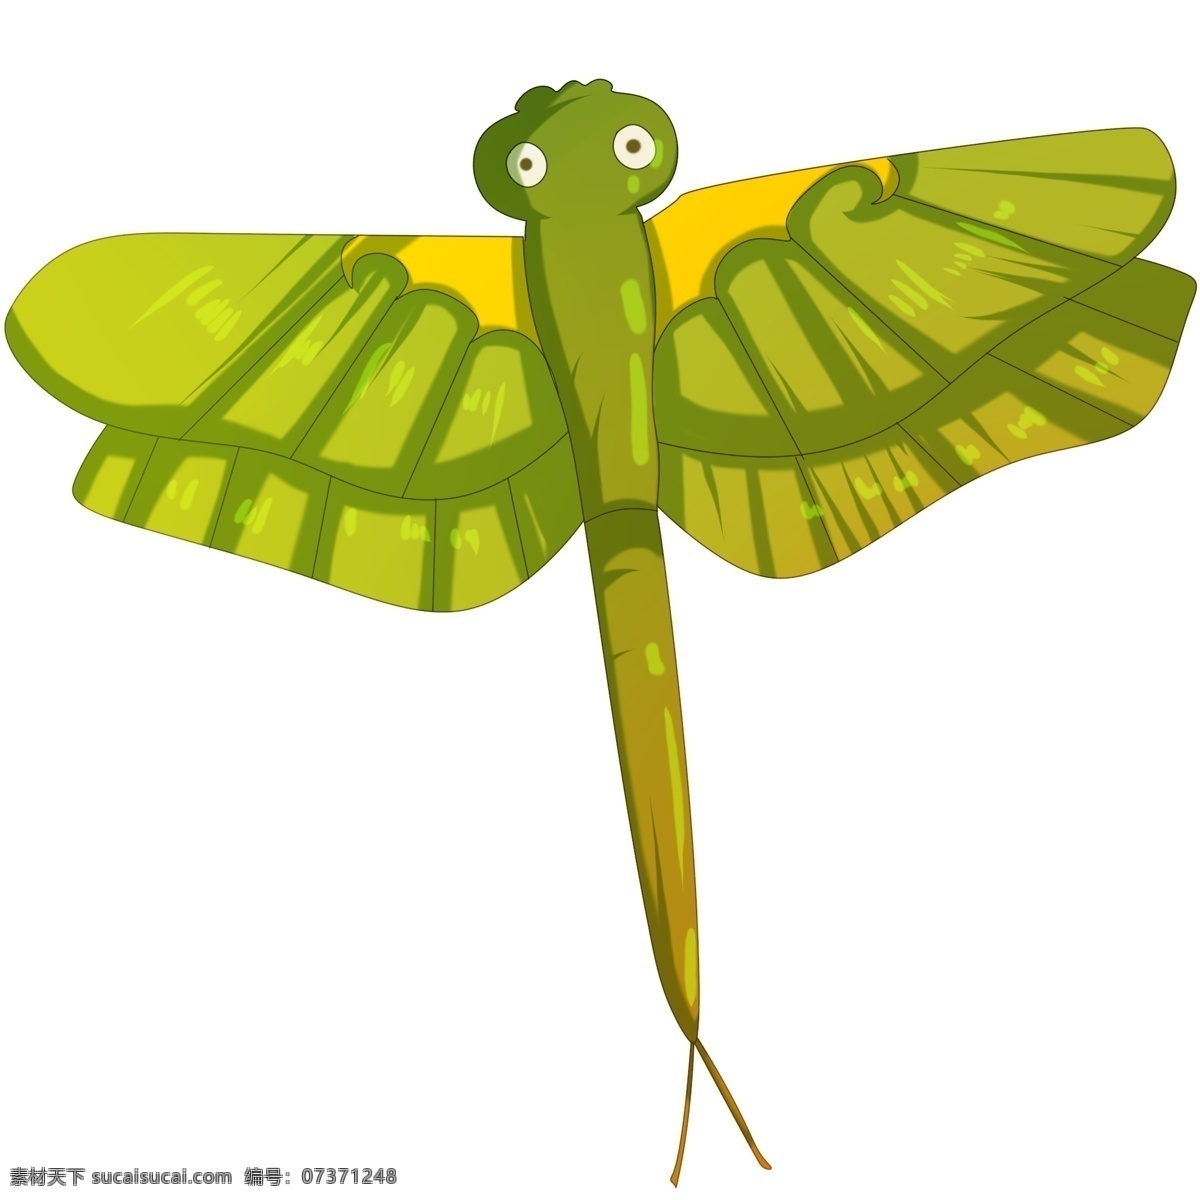 绿色 蜻蜓 风筝 筝 插画 手绘蜻蜓风筝 卡通蜻蜓风筝 漂亮 可爱 蜻蜓风筝插画